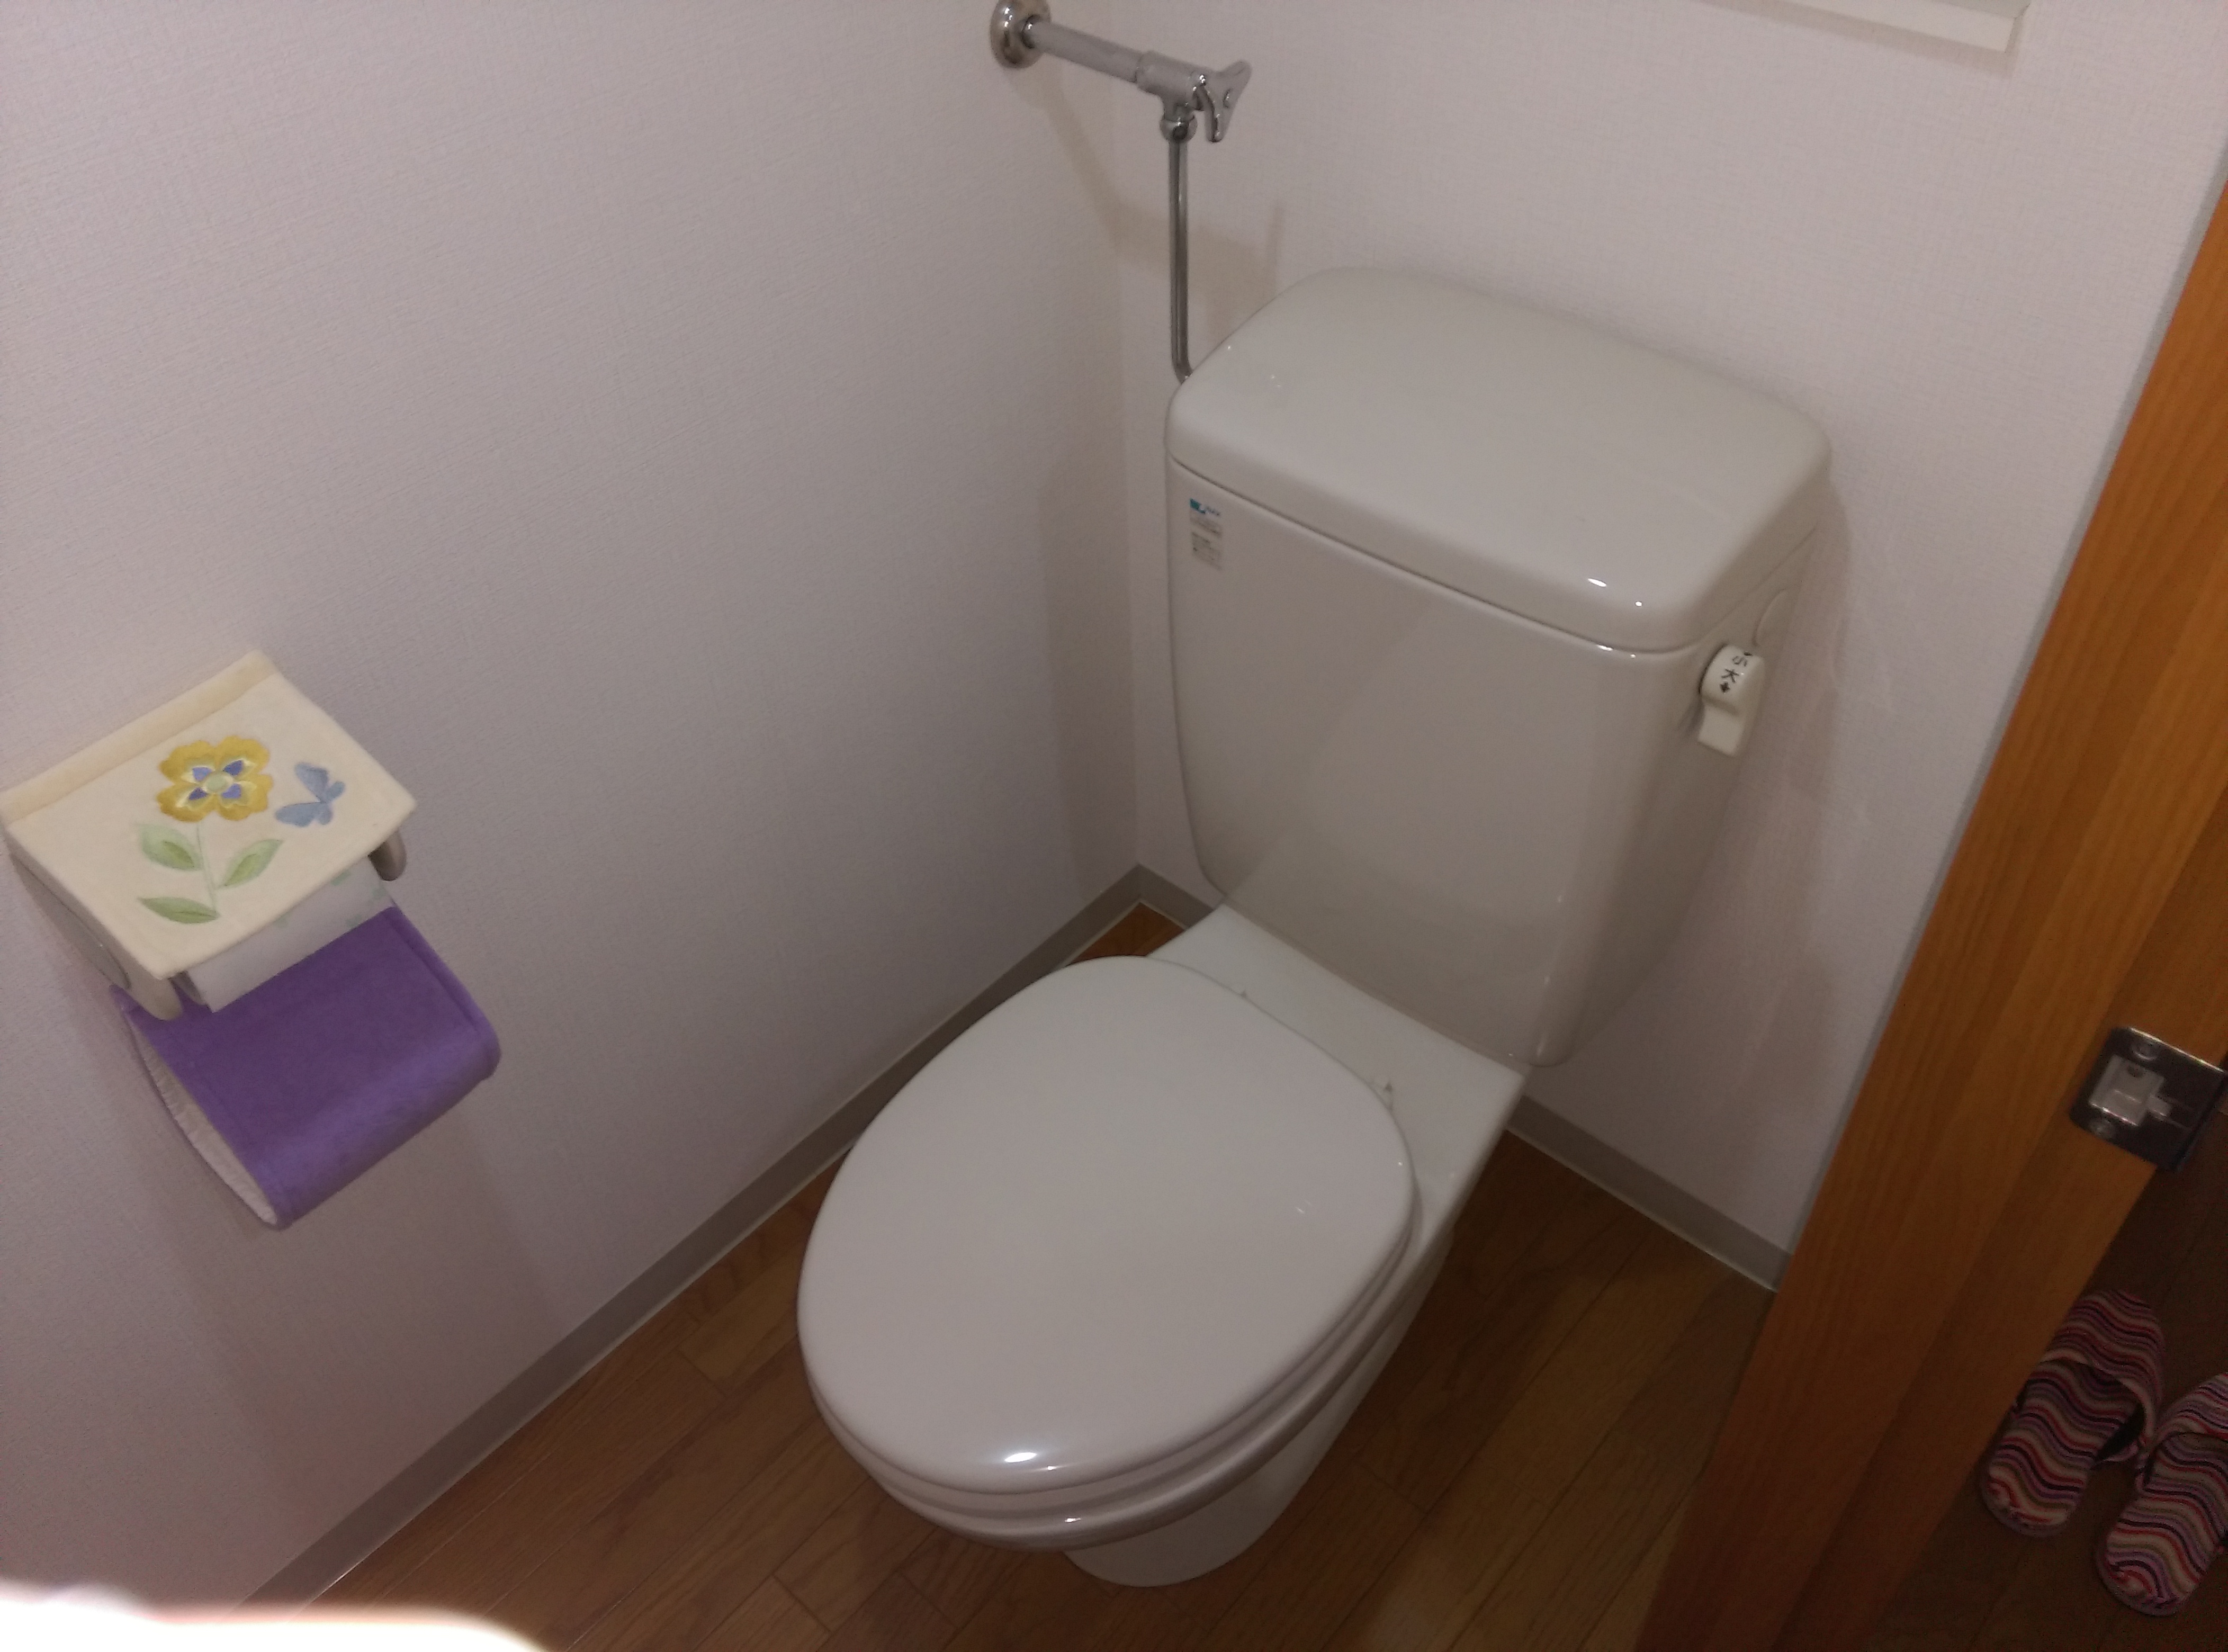 江別市 野幌町 洋式 トイレ の 交換 工事 お掃除が楽になるトイレとは 札幌で水漏れ・つまりの修理なら